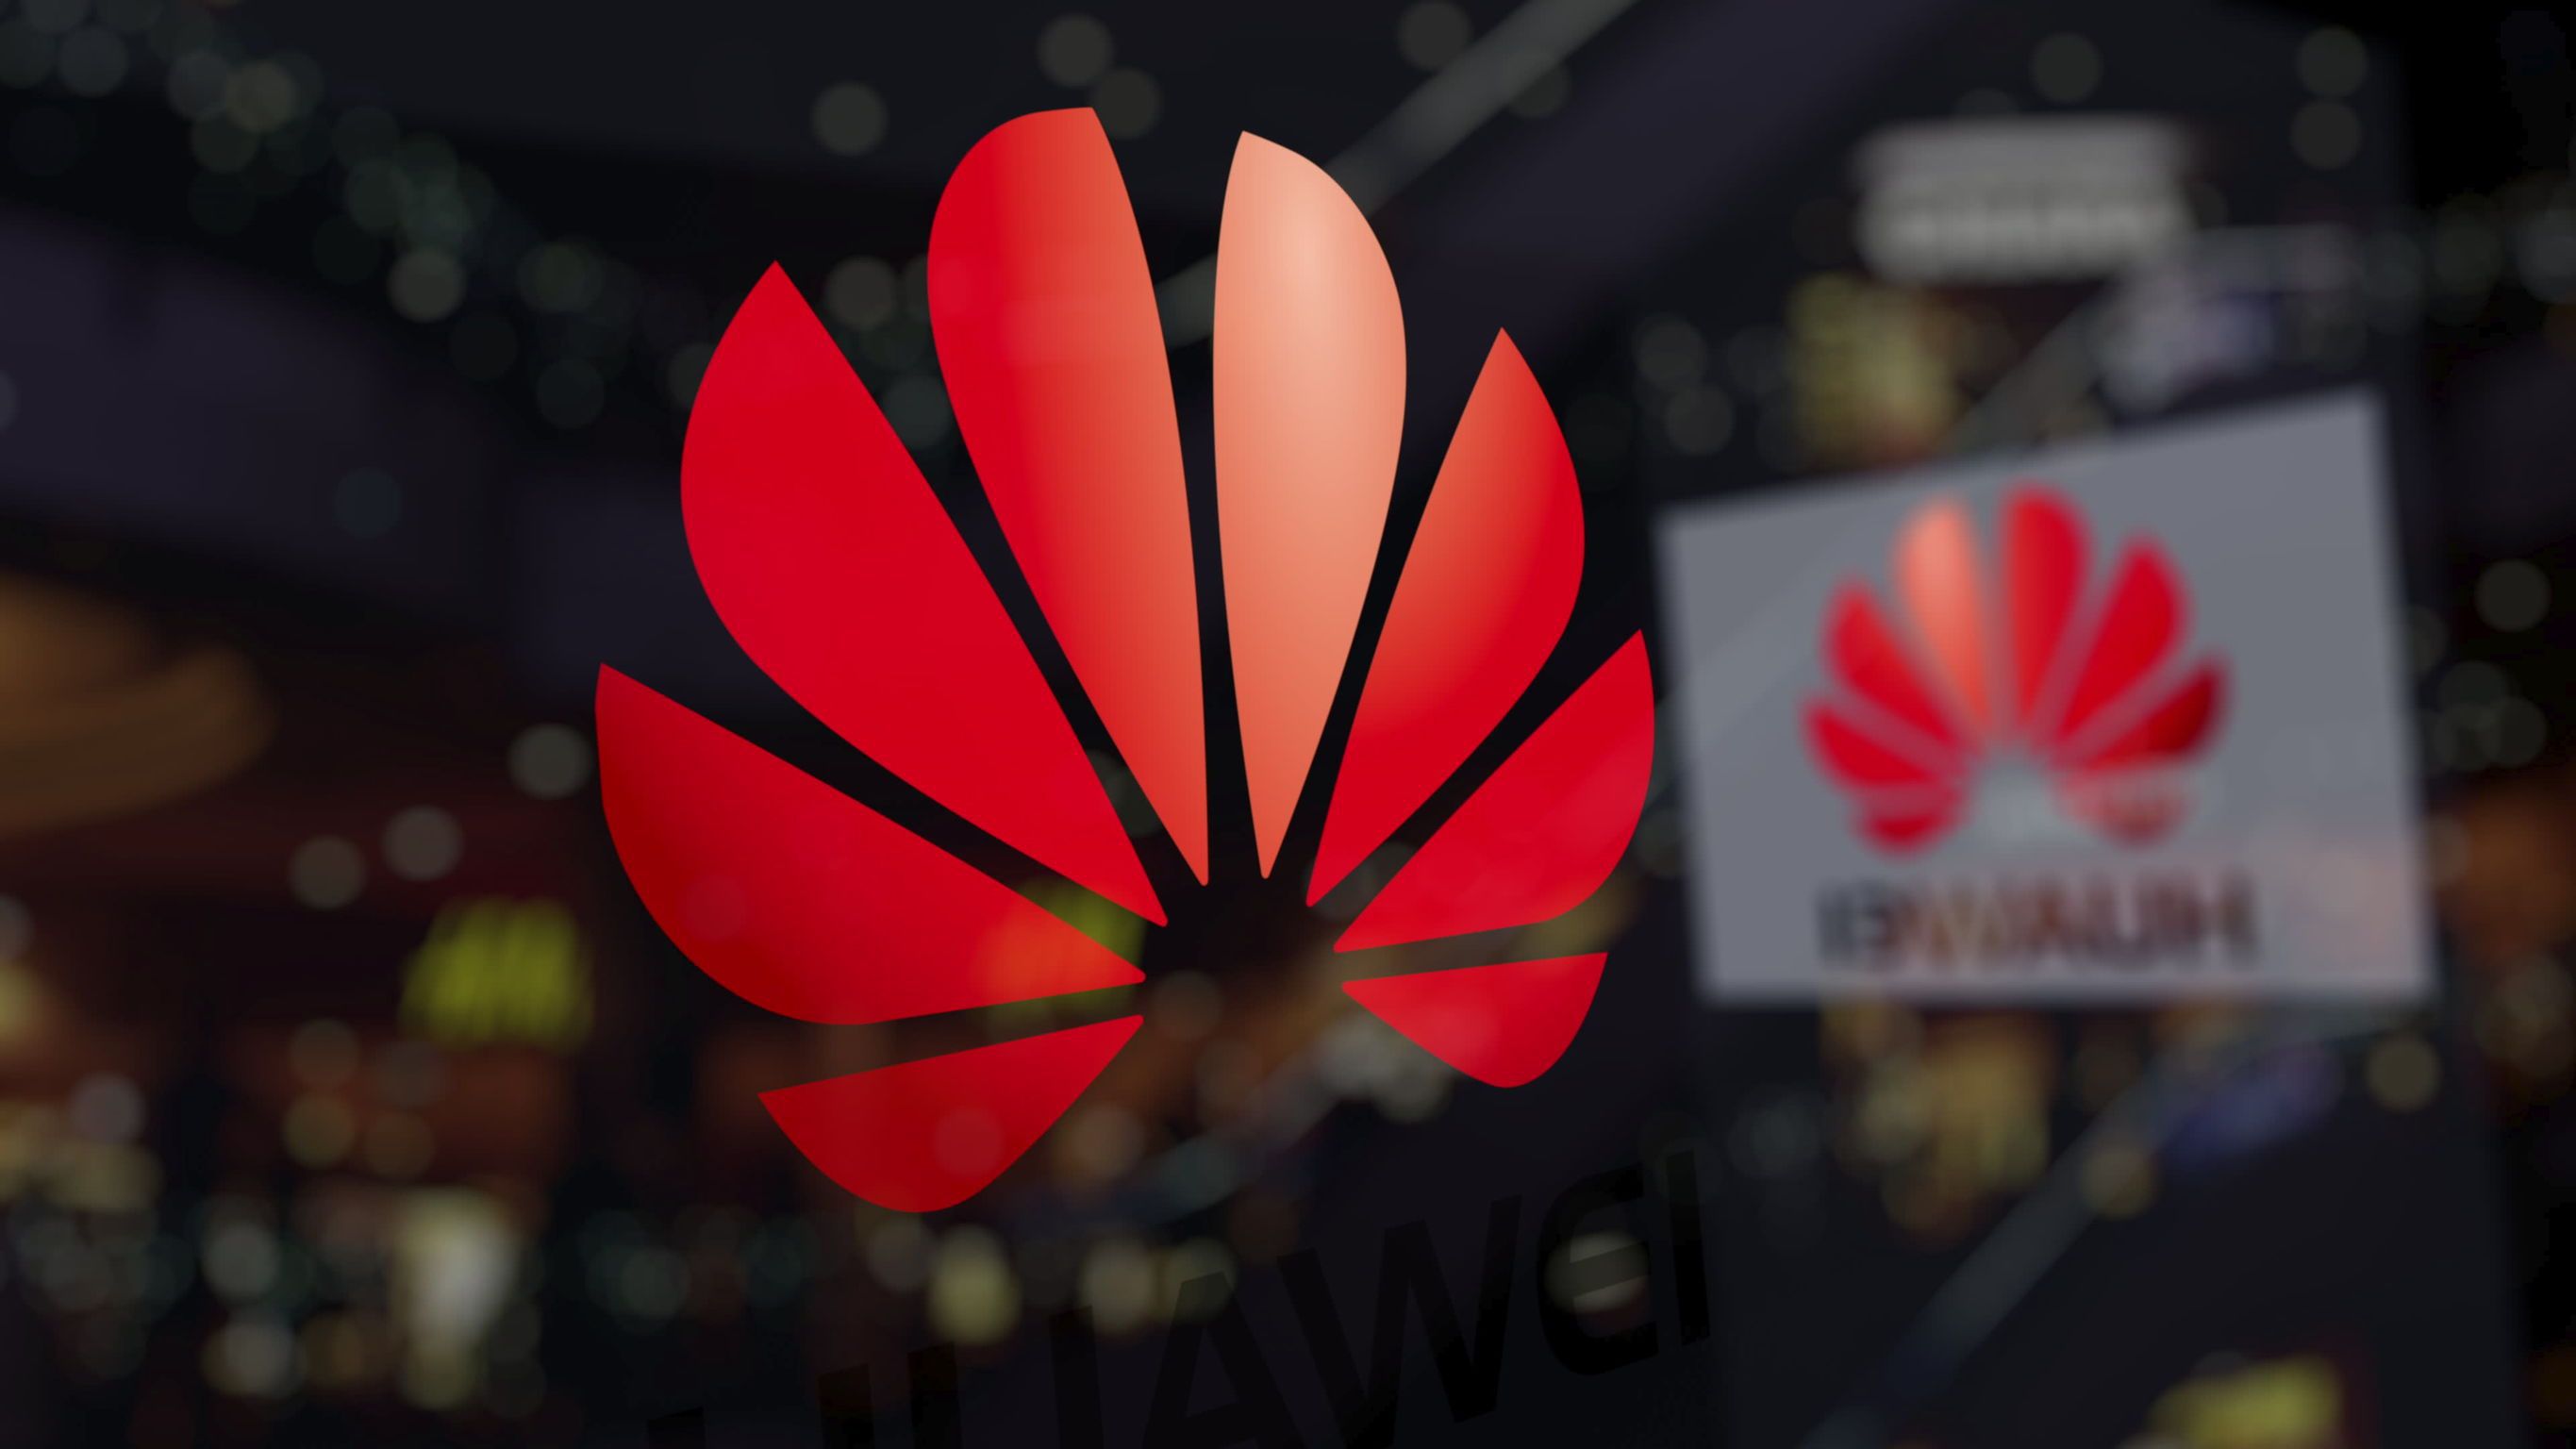 O nouă provocare pentru SUA: Profitul Huawei creşte cu 564% în primul trimestru din acest an, compania reuşind să depăşească sancţiunile americane. „Continuăm să construim mecanisme pentru a continua afacerile la nivel global într-un mod versatil”